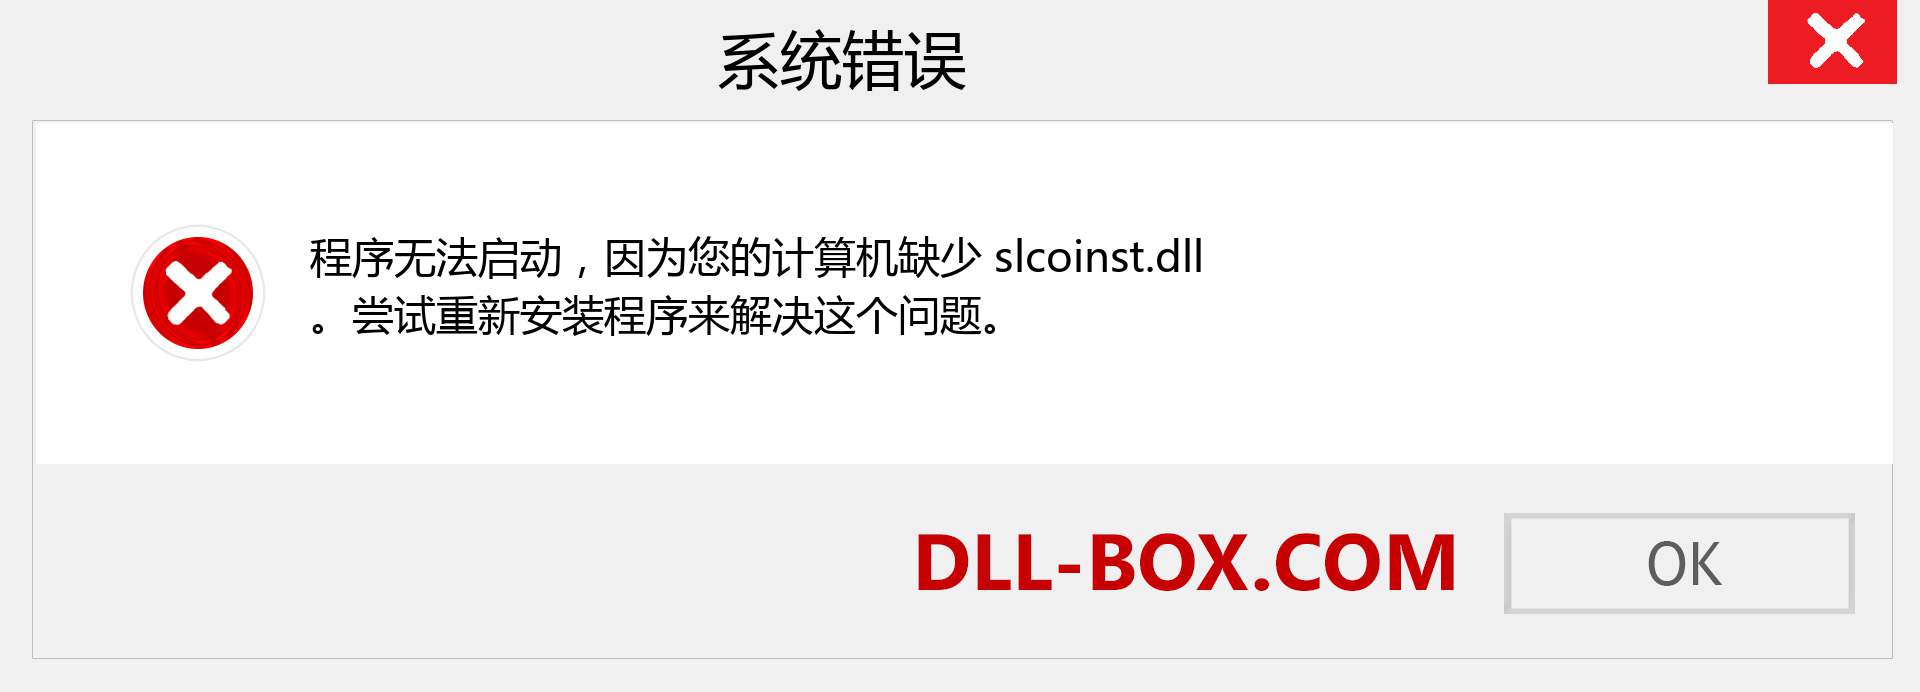 slcoinst.dll 文件丢失？。 适用于 Windows 7、8、10 的下载 - 修复 Windows、照片、图像上的 slcoinst dll 丢失错误